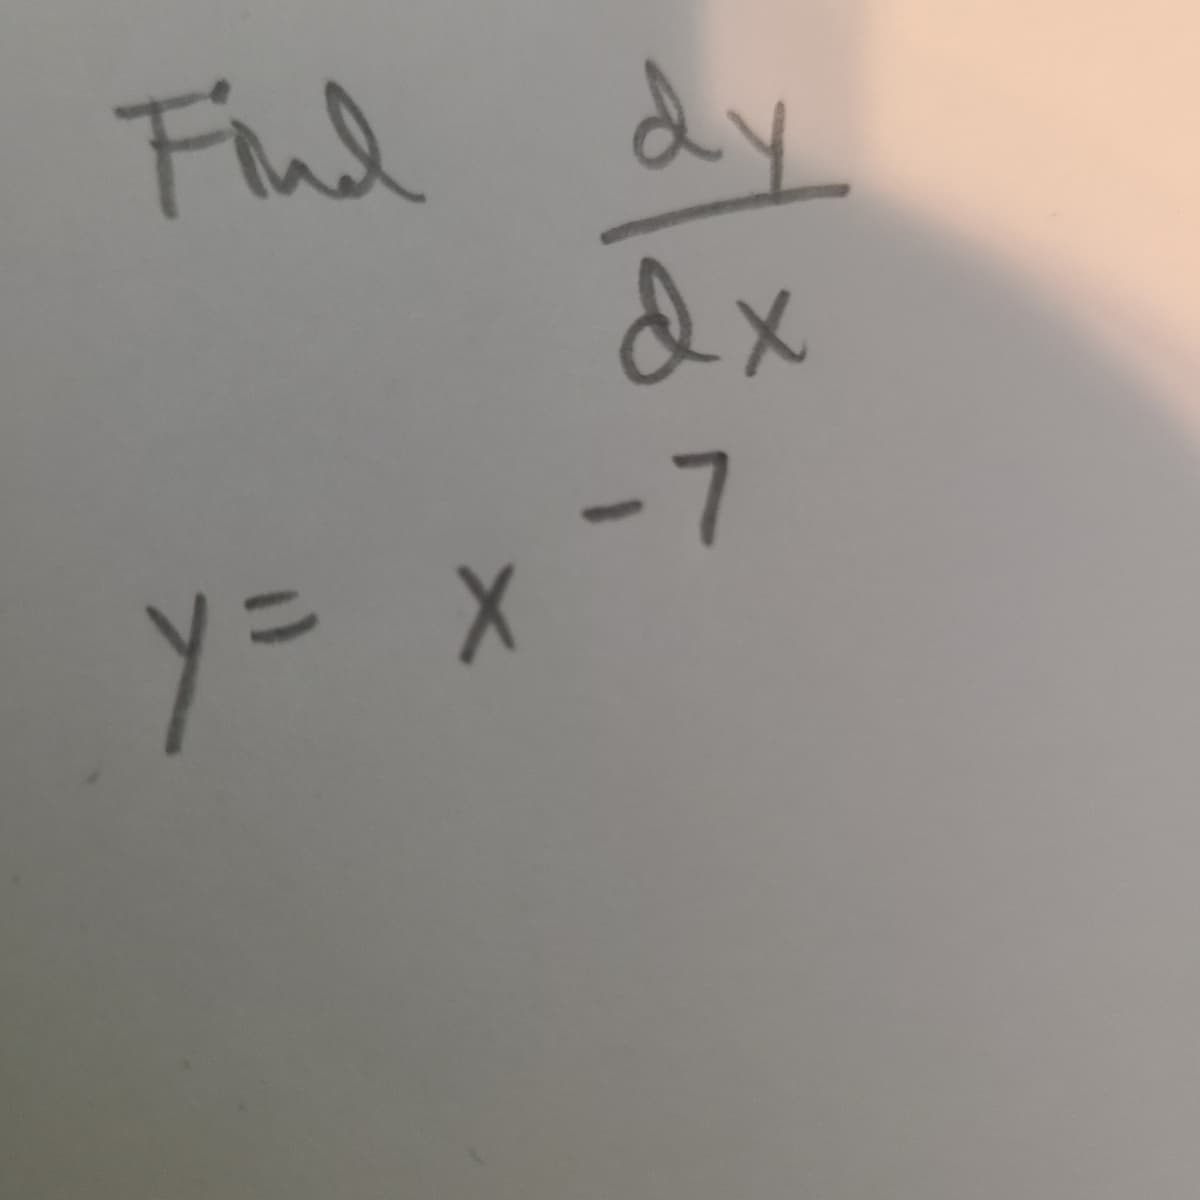 Find dy
y = x
-7